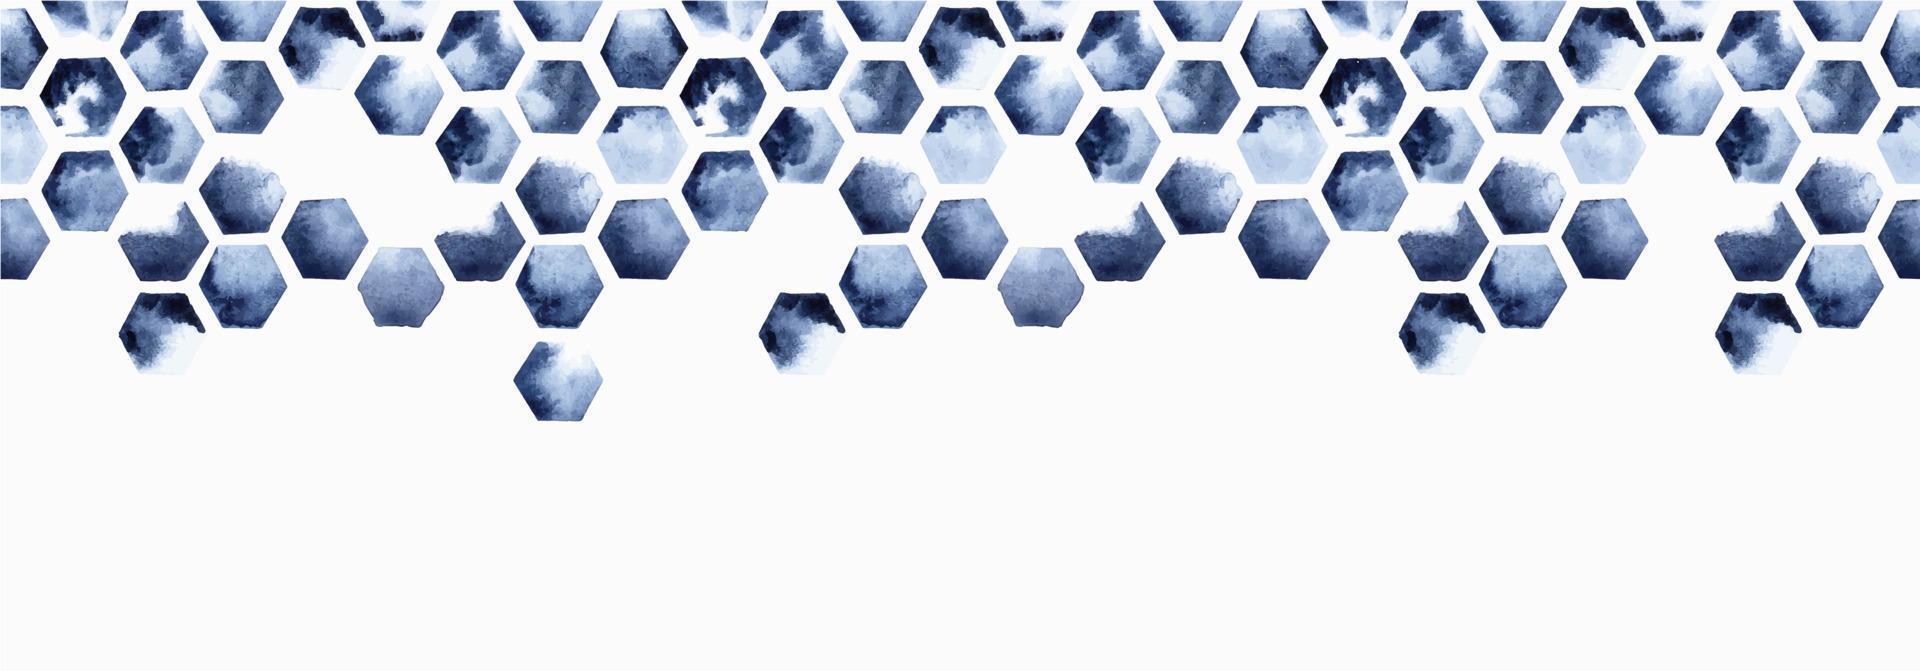 bordure transparente d'illustration aquarelle, motif de carreaux hexagonaux. nid d'abeilles, bleu indigo sur fond blanc. impression abstraite avec des taches de peinture. vecteur